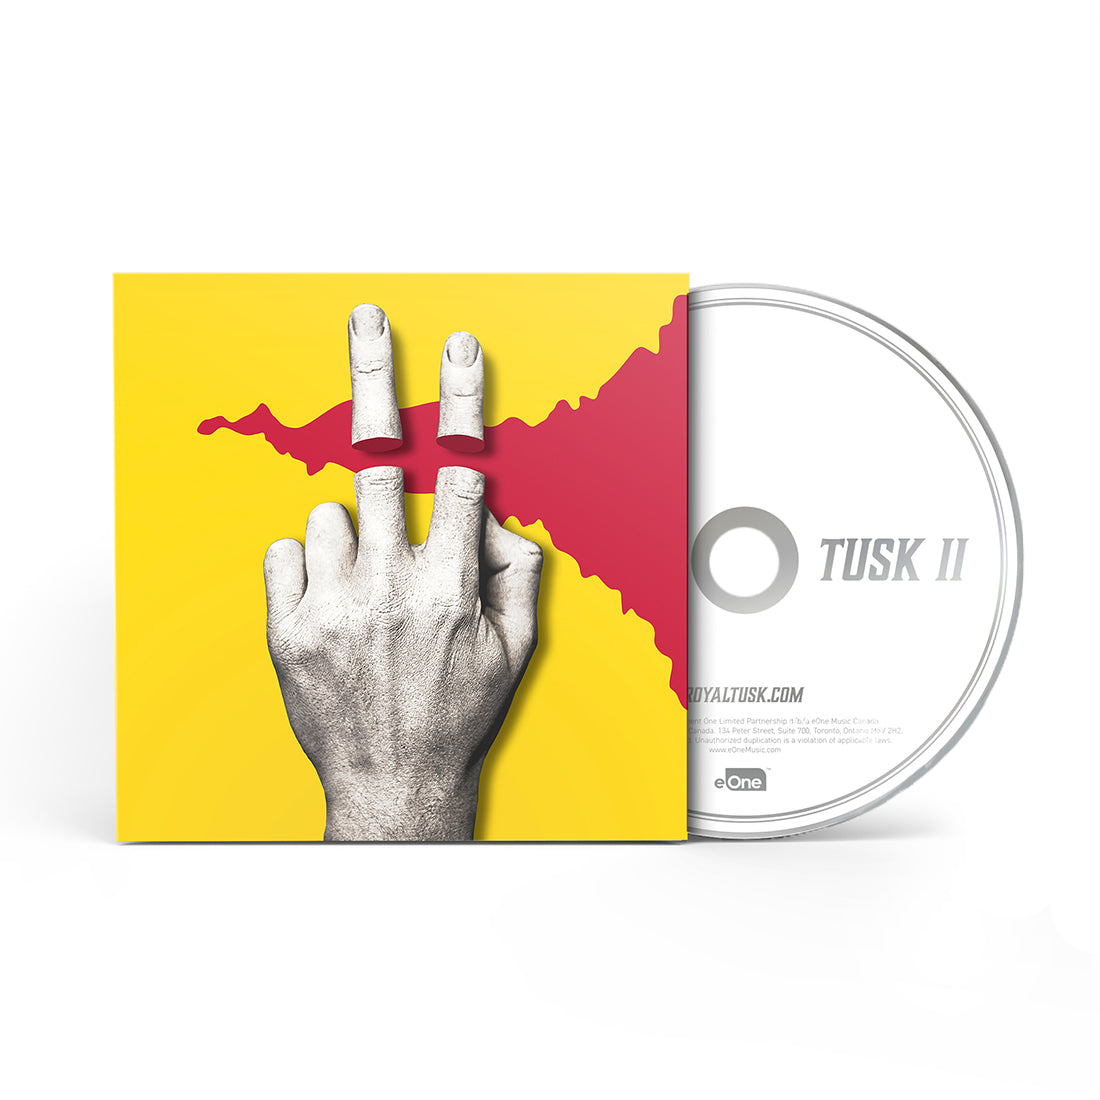 Royal Tusk - Tusk II - CD